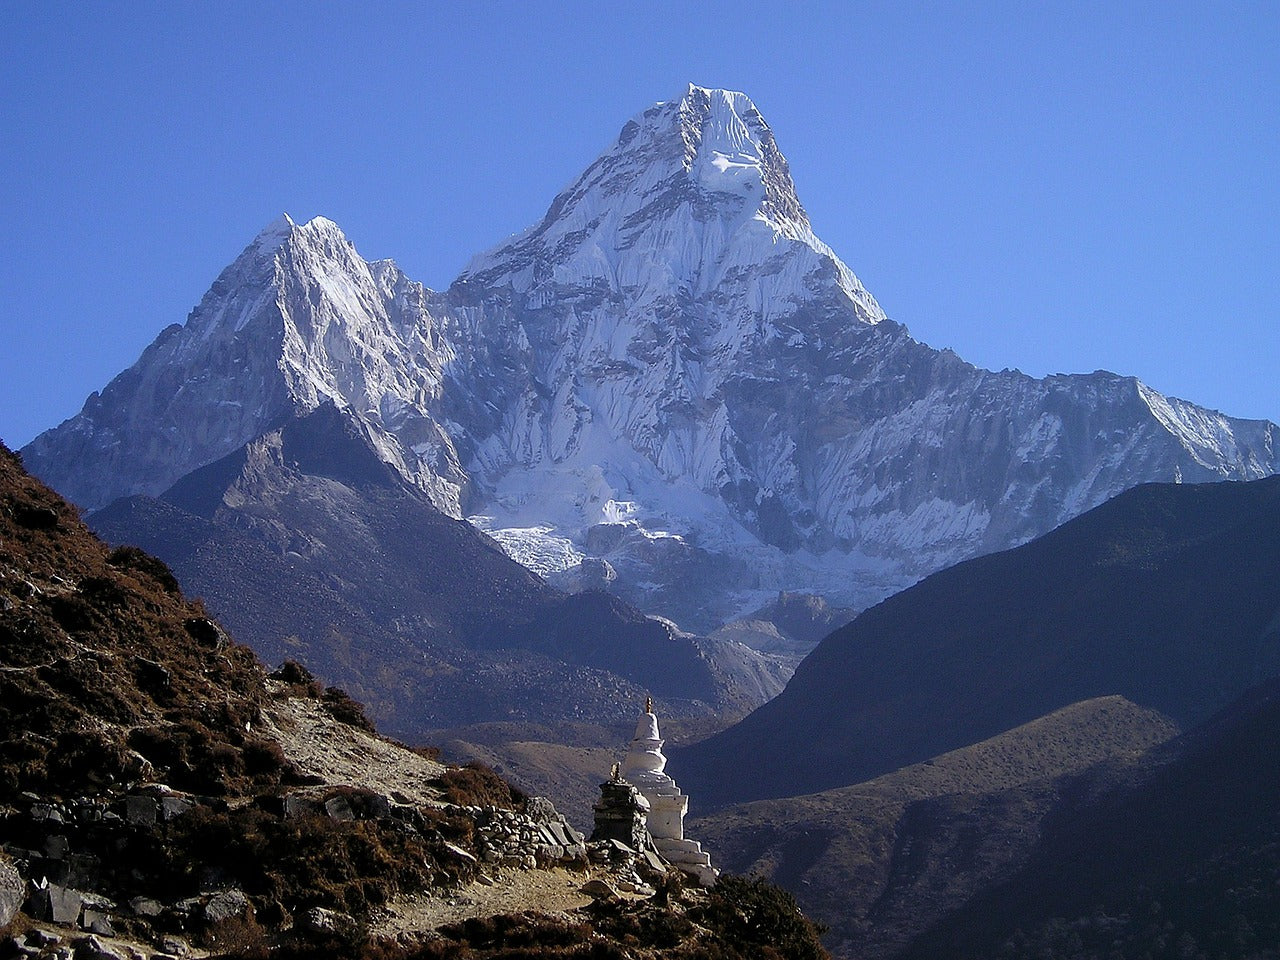 KRISTALLSALZ aus den Ausläufern des Himalaya, Streuer